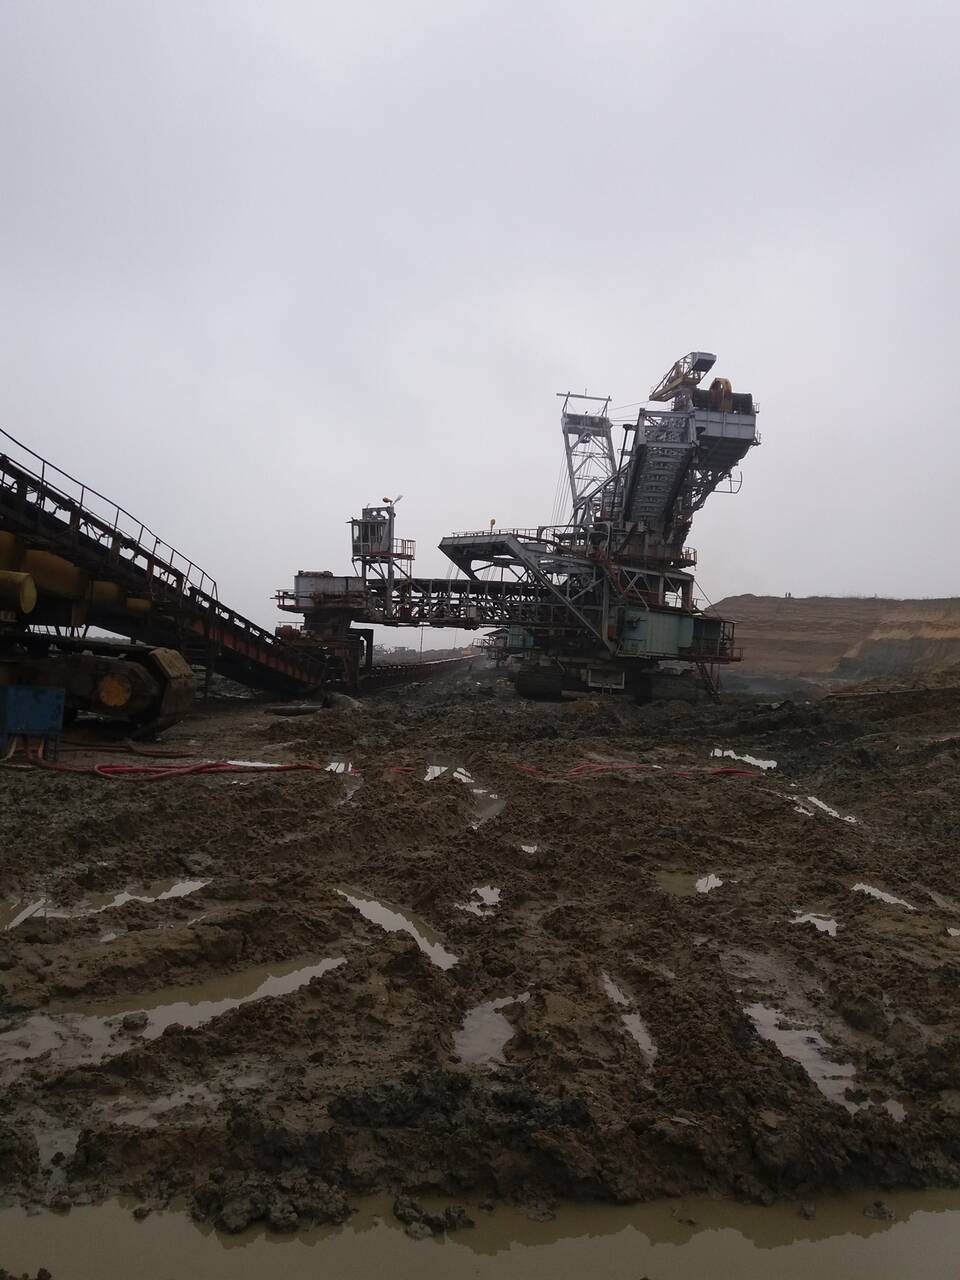 Minerii de la CE Oltenia nu renunță la protest, deși a fost declarat ilegal. Angajații de la cariera Jilț Nord au reluat greva